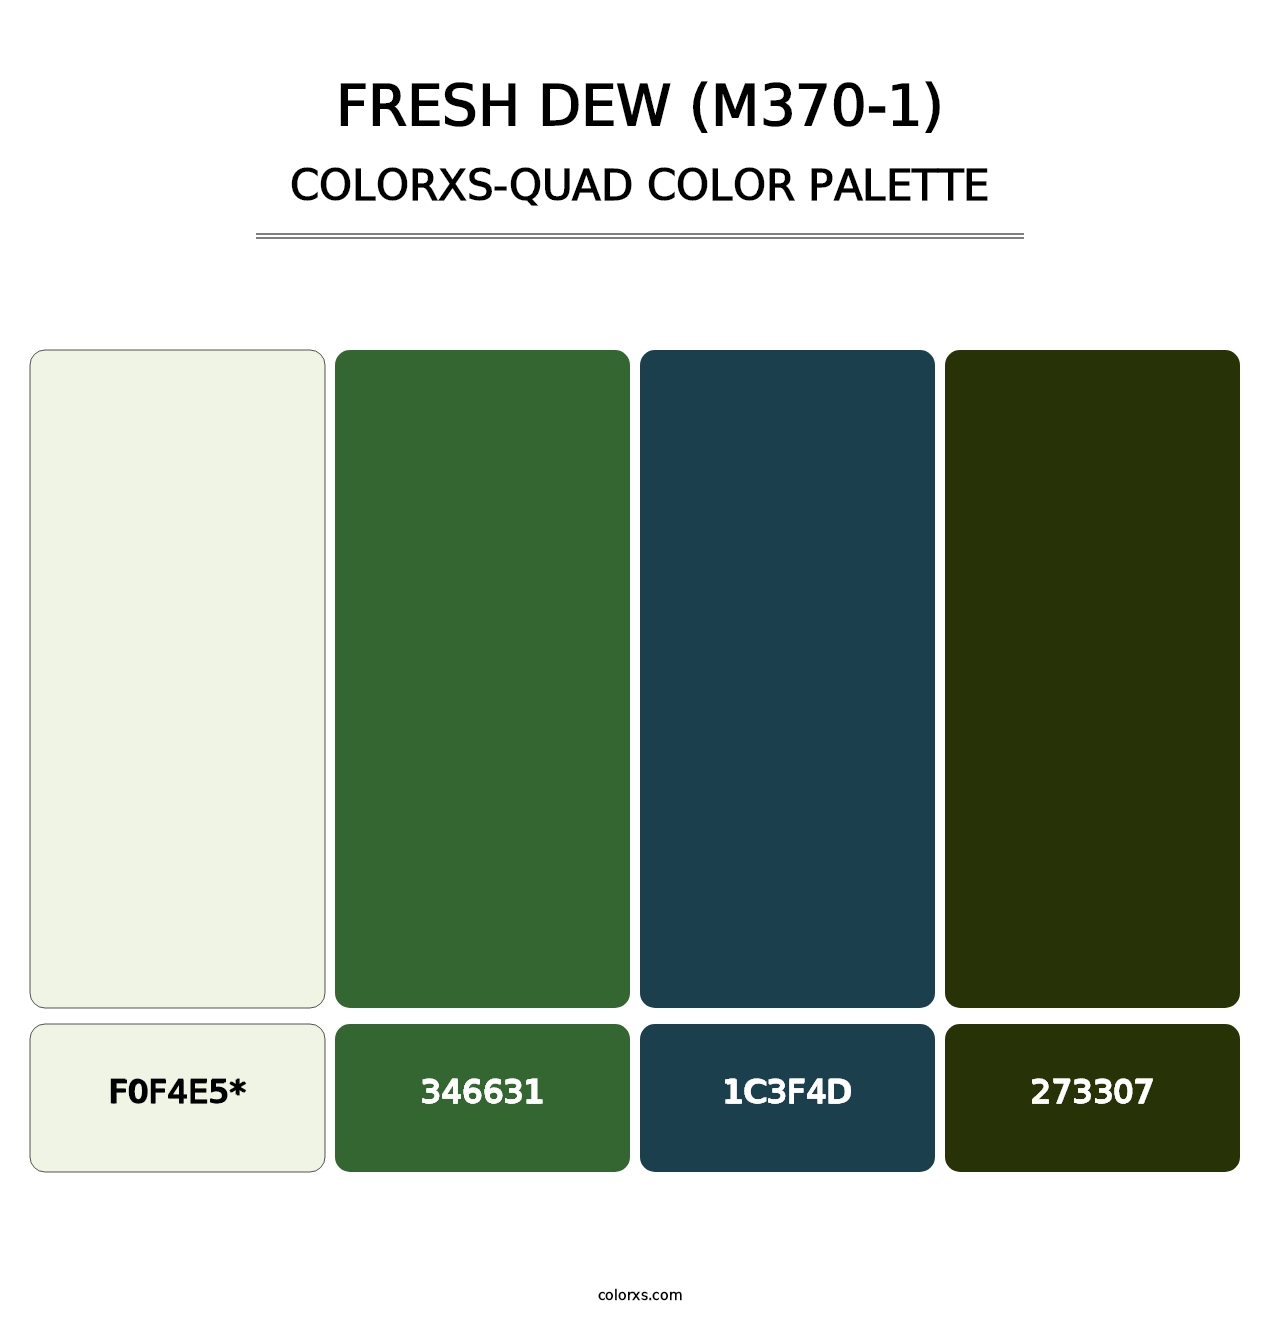 Fresh Dew (M370-1) - Colorxs Quad Palette